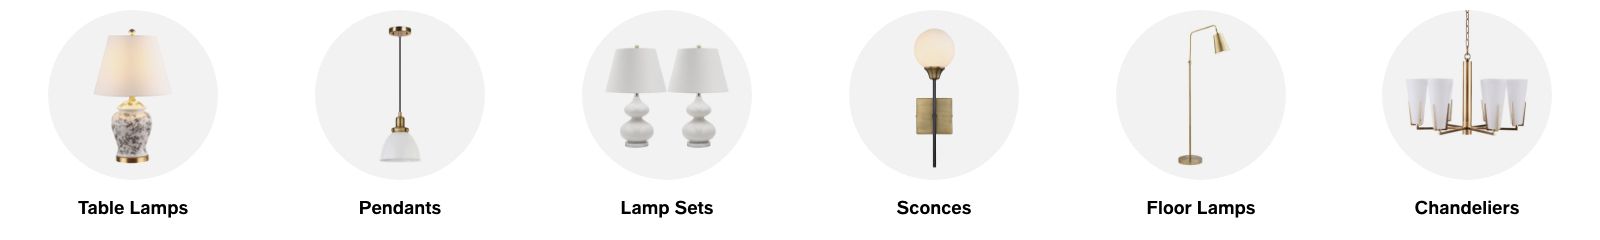 Table Lamps, Pendants, Lamp Sets, Sconces, Floor Lamps, Chandeliers 